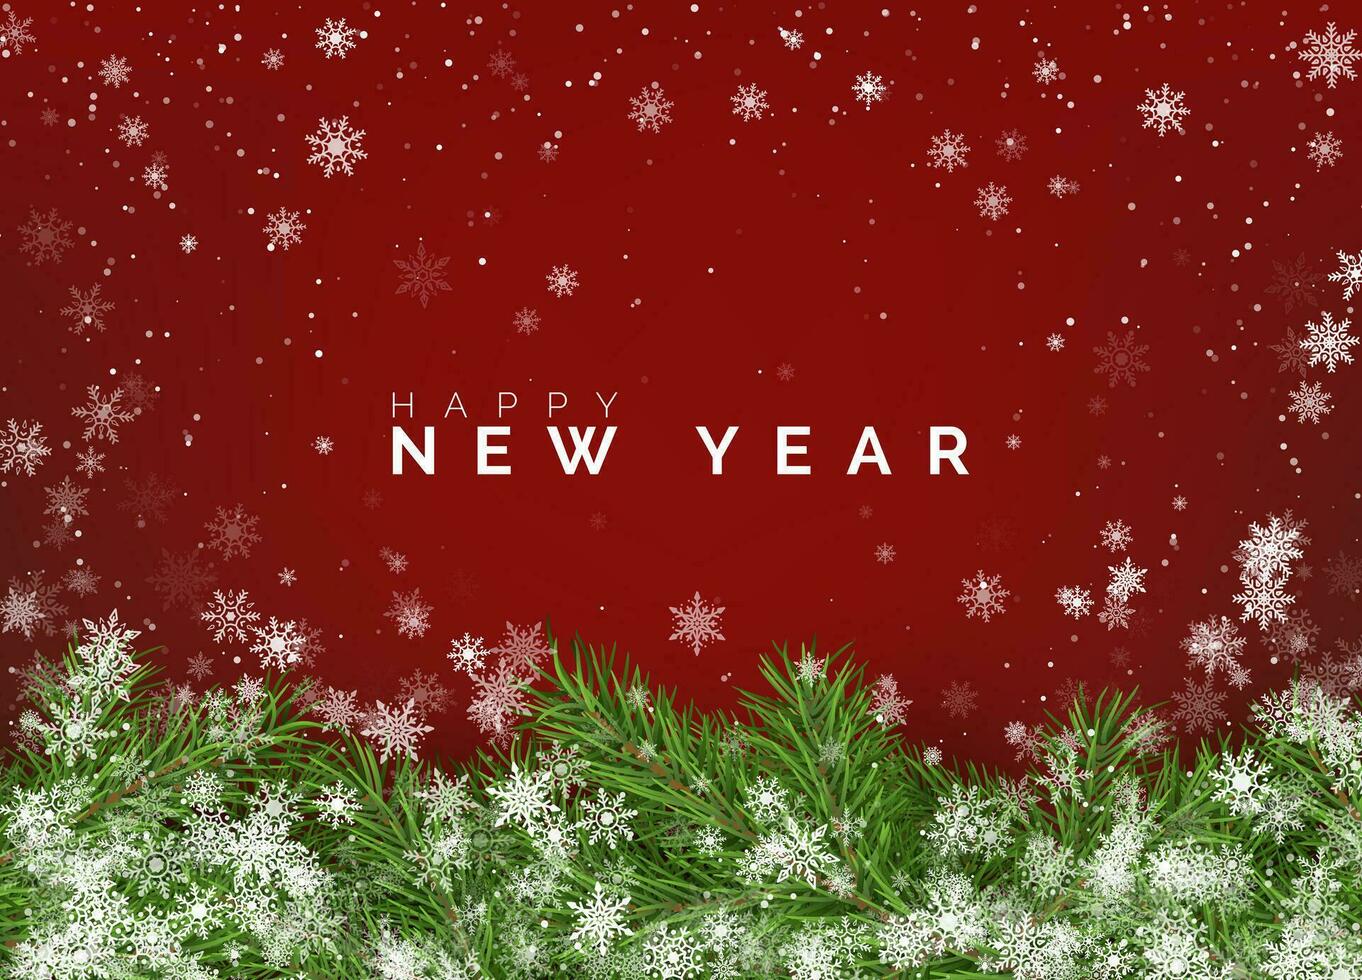 alegre Natal e feliz Novo ano cumprimento cartão. Natal árvore galhos em vermelho fundo com branco queda flocos de neve. feriado decoração elementos. vetor ilustração